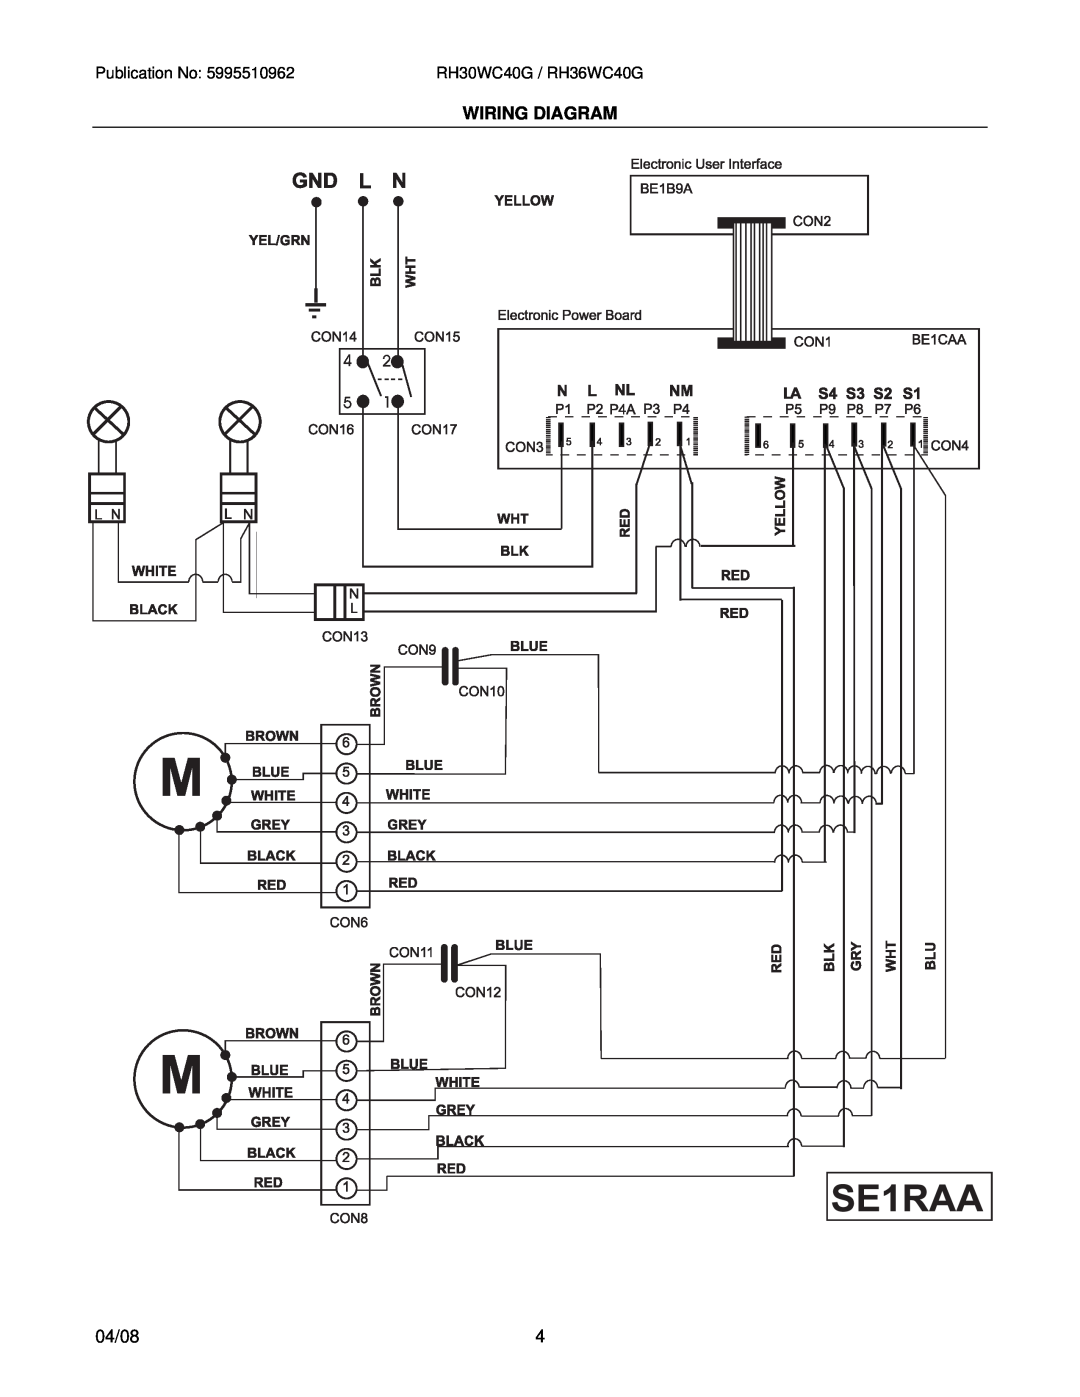 Electrolux RH36WC40GSA, RH30WC40GSA installation instructions Wiring Diagram, 04/08, RH30WC40G / RH36WC40G 